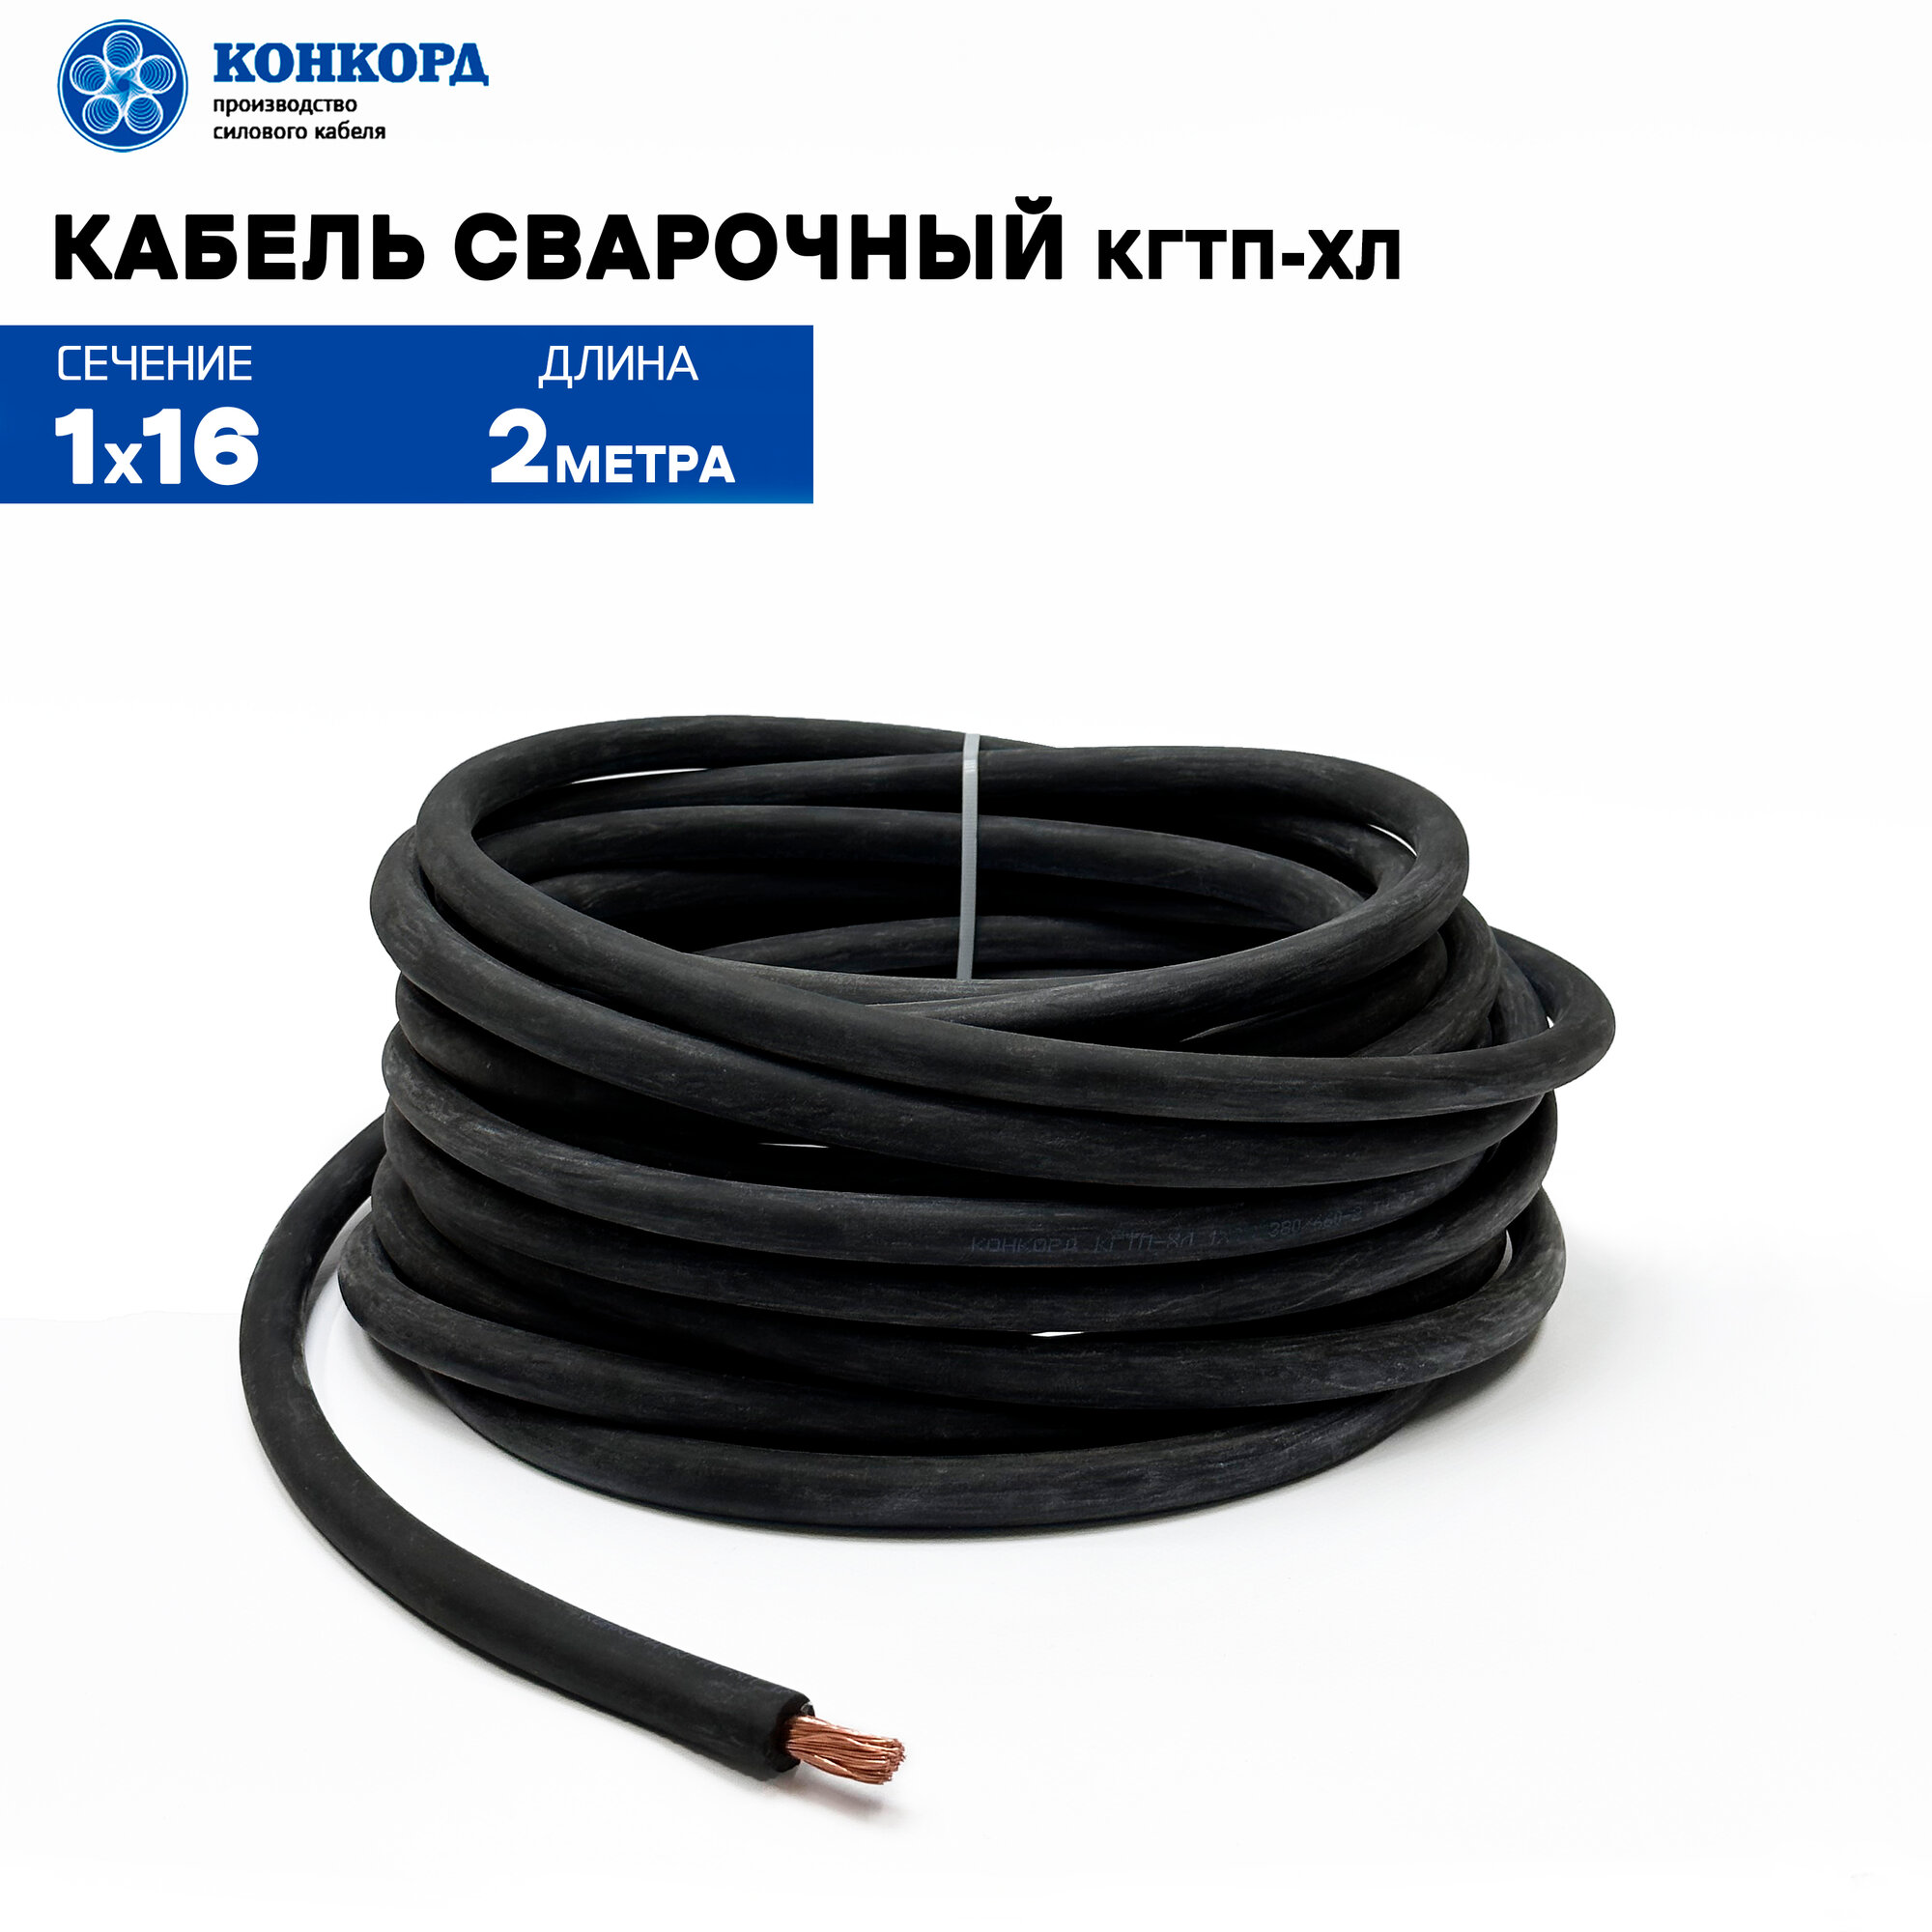 Сварочный кабель КГтп-ХЛ 16кв. мм 2метра.